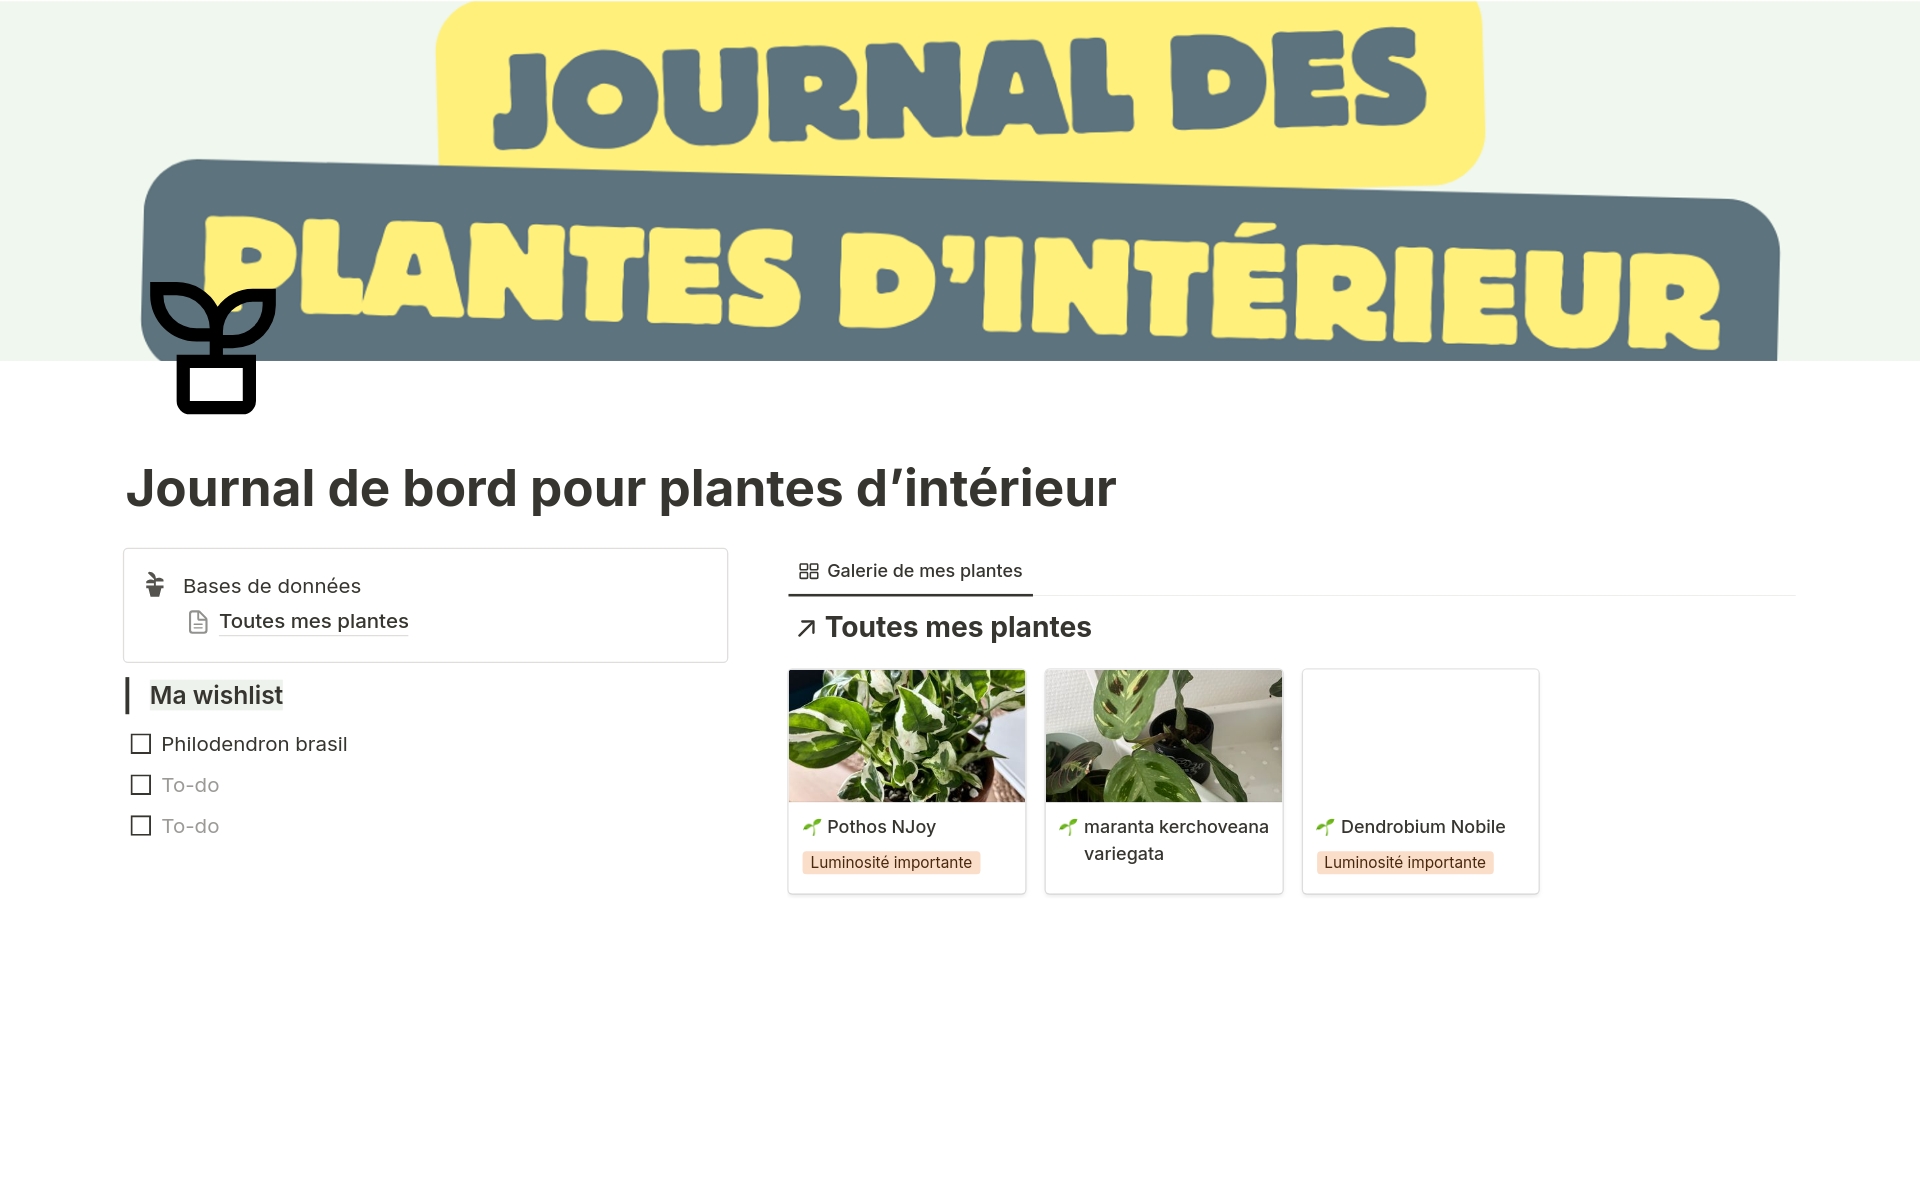 A template preview for Journal de bord pour plantes d'intérieur